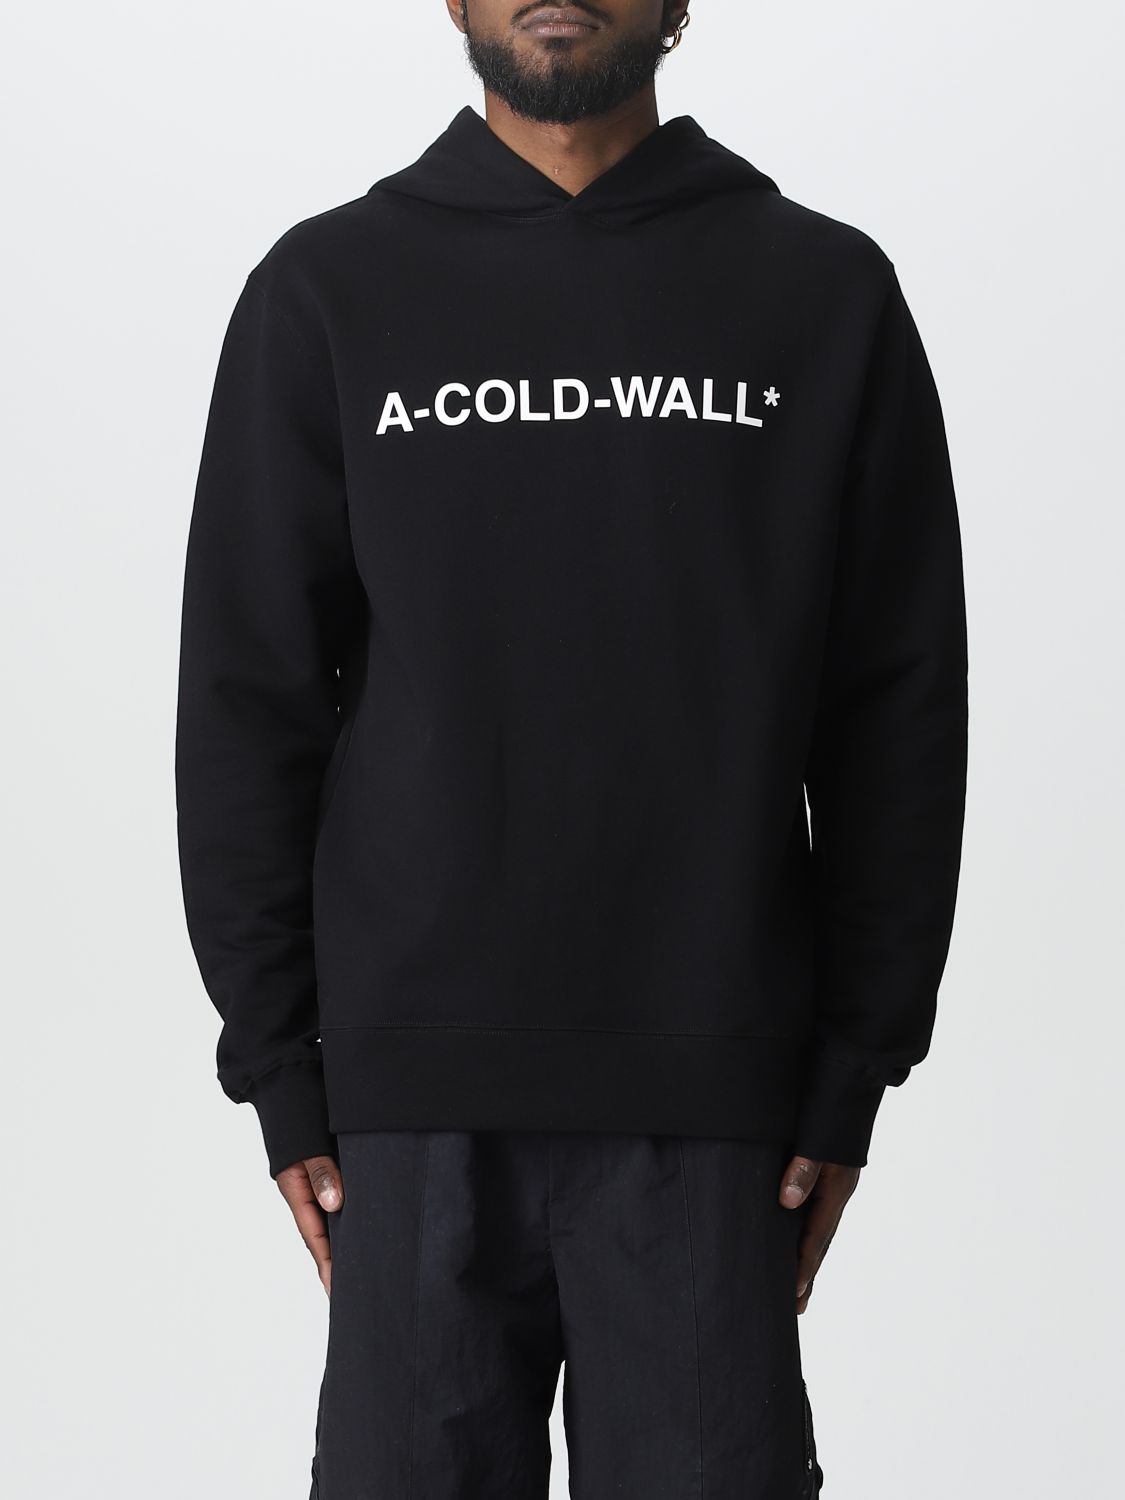 A-COLD-WALL* SWEATSHIRT A-COLD-WALL* MEN COLOR BLACK,E18151002